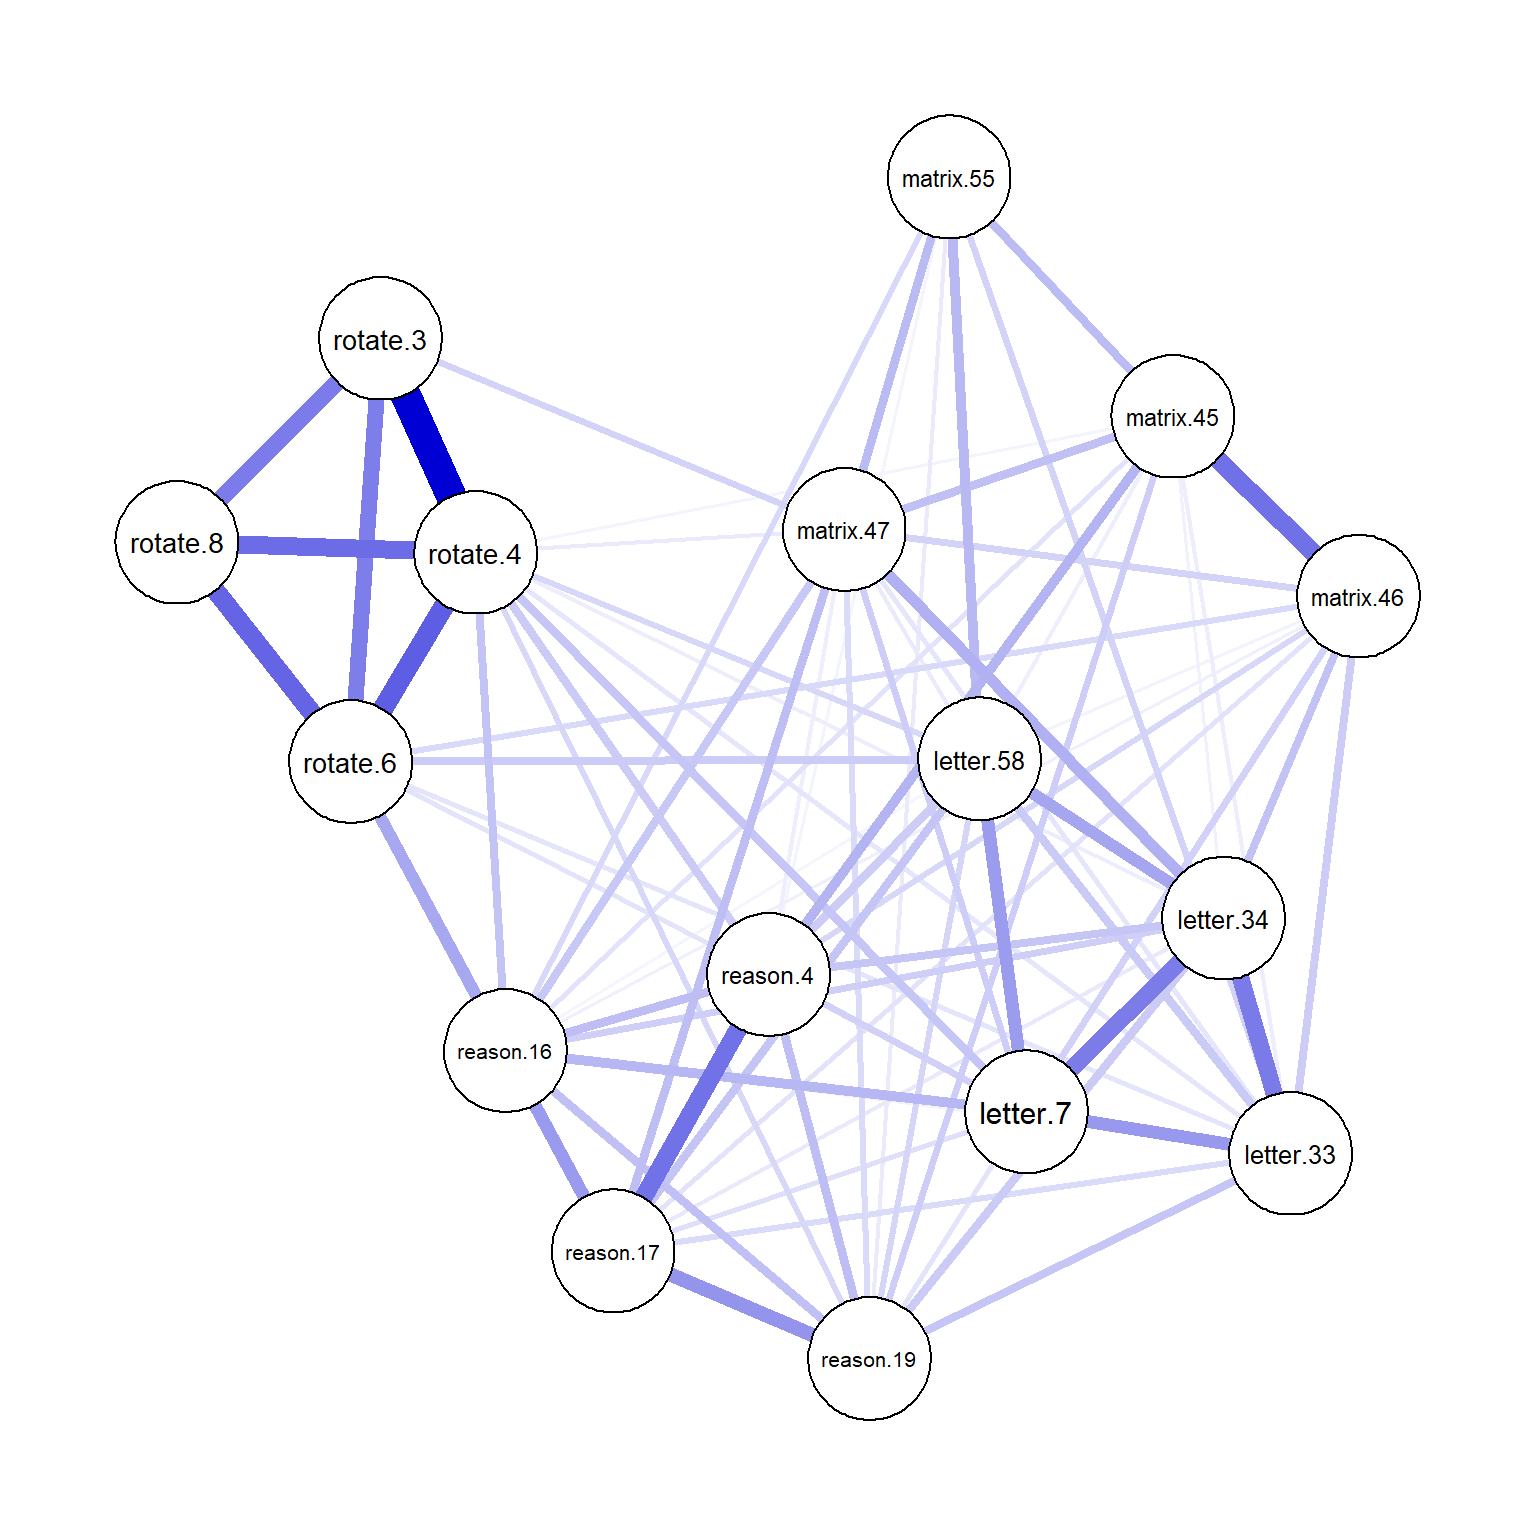 Network plot for the Ising model